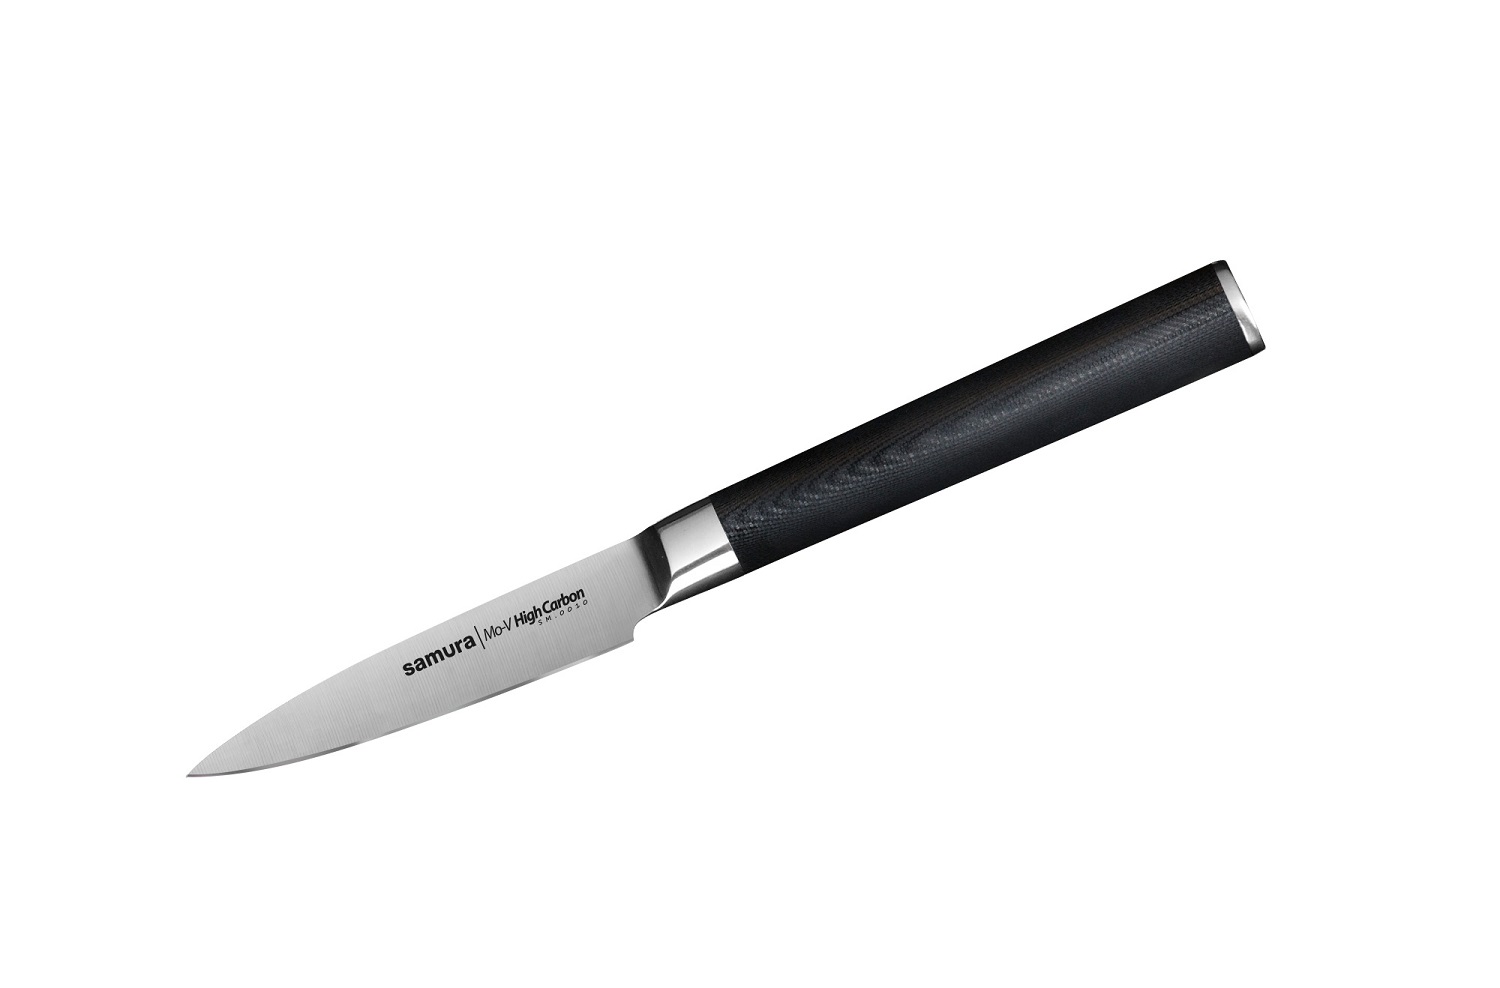 Нож Samura овощной Mo-V, 9 см, G-10 нож для овощей mo v 9 см sm 0010 k samura